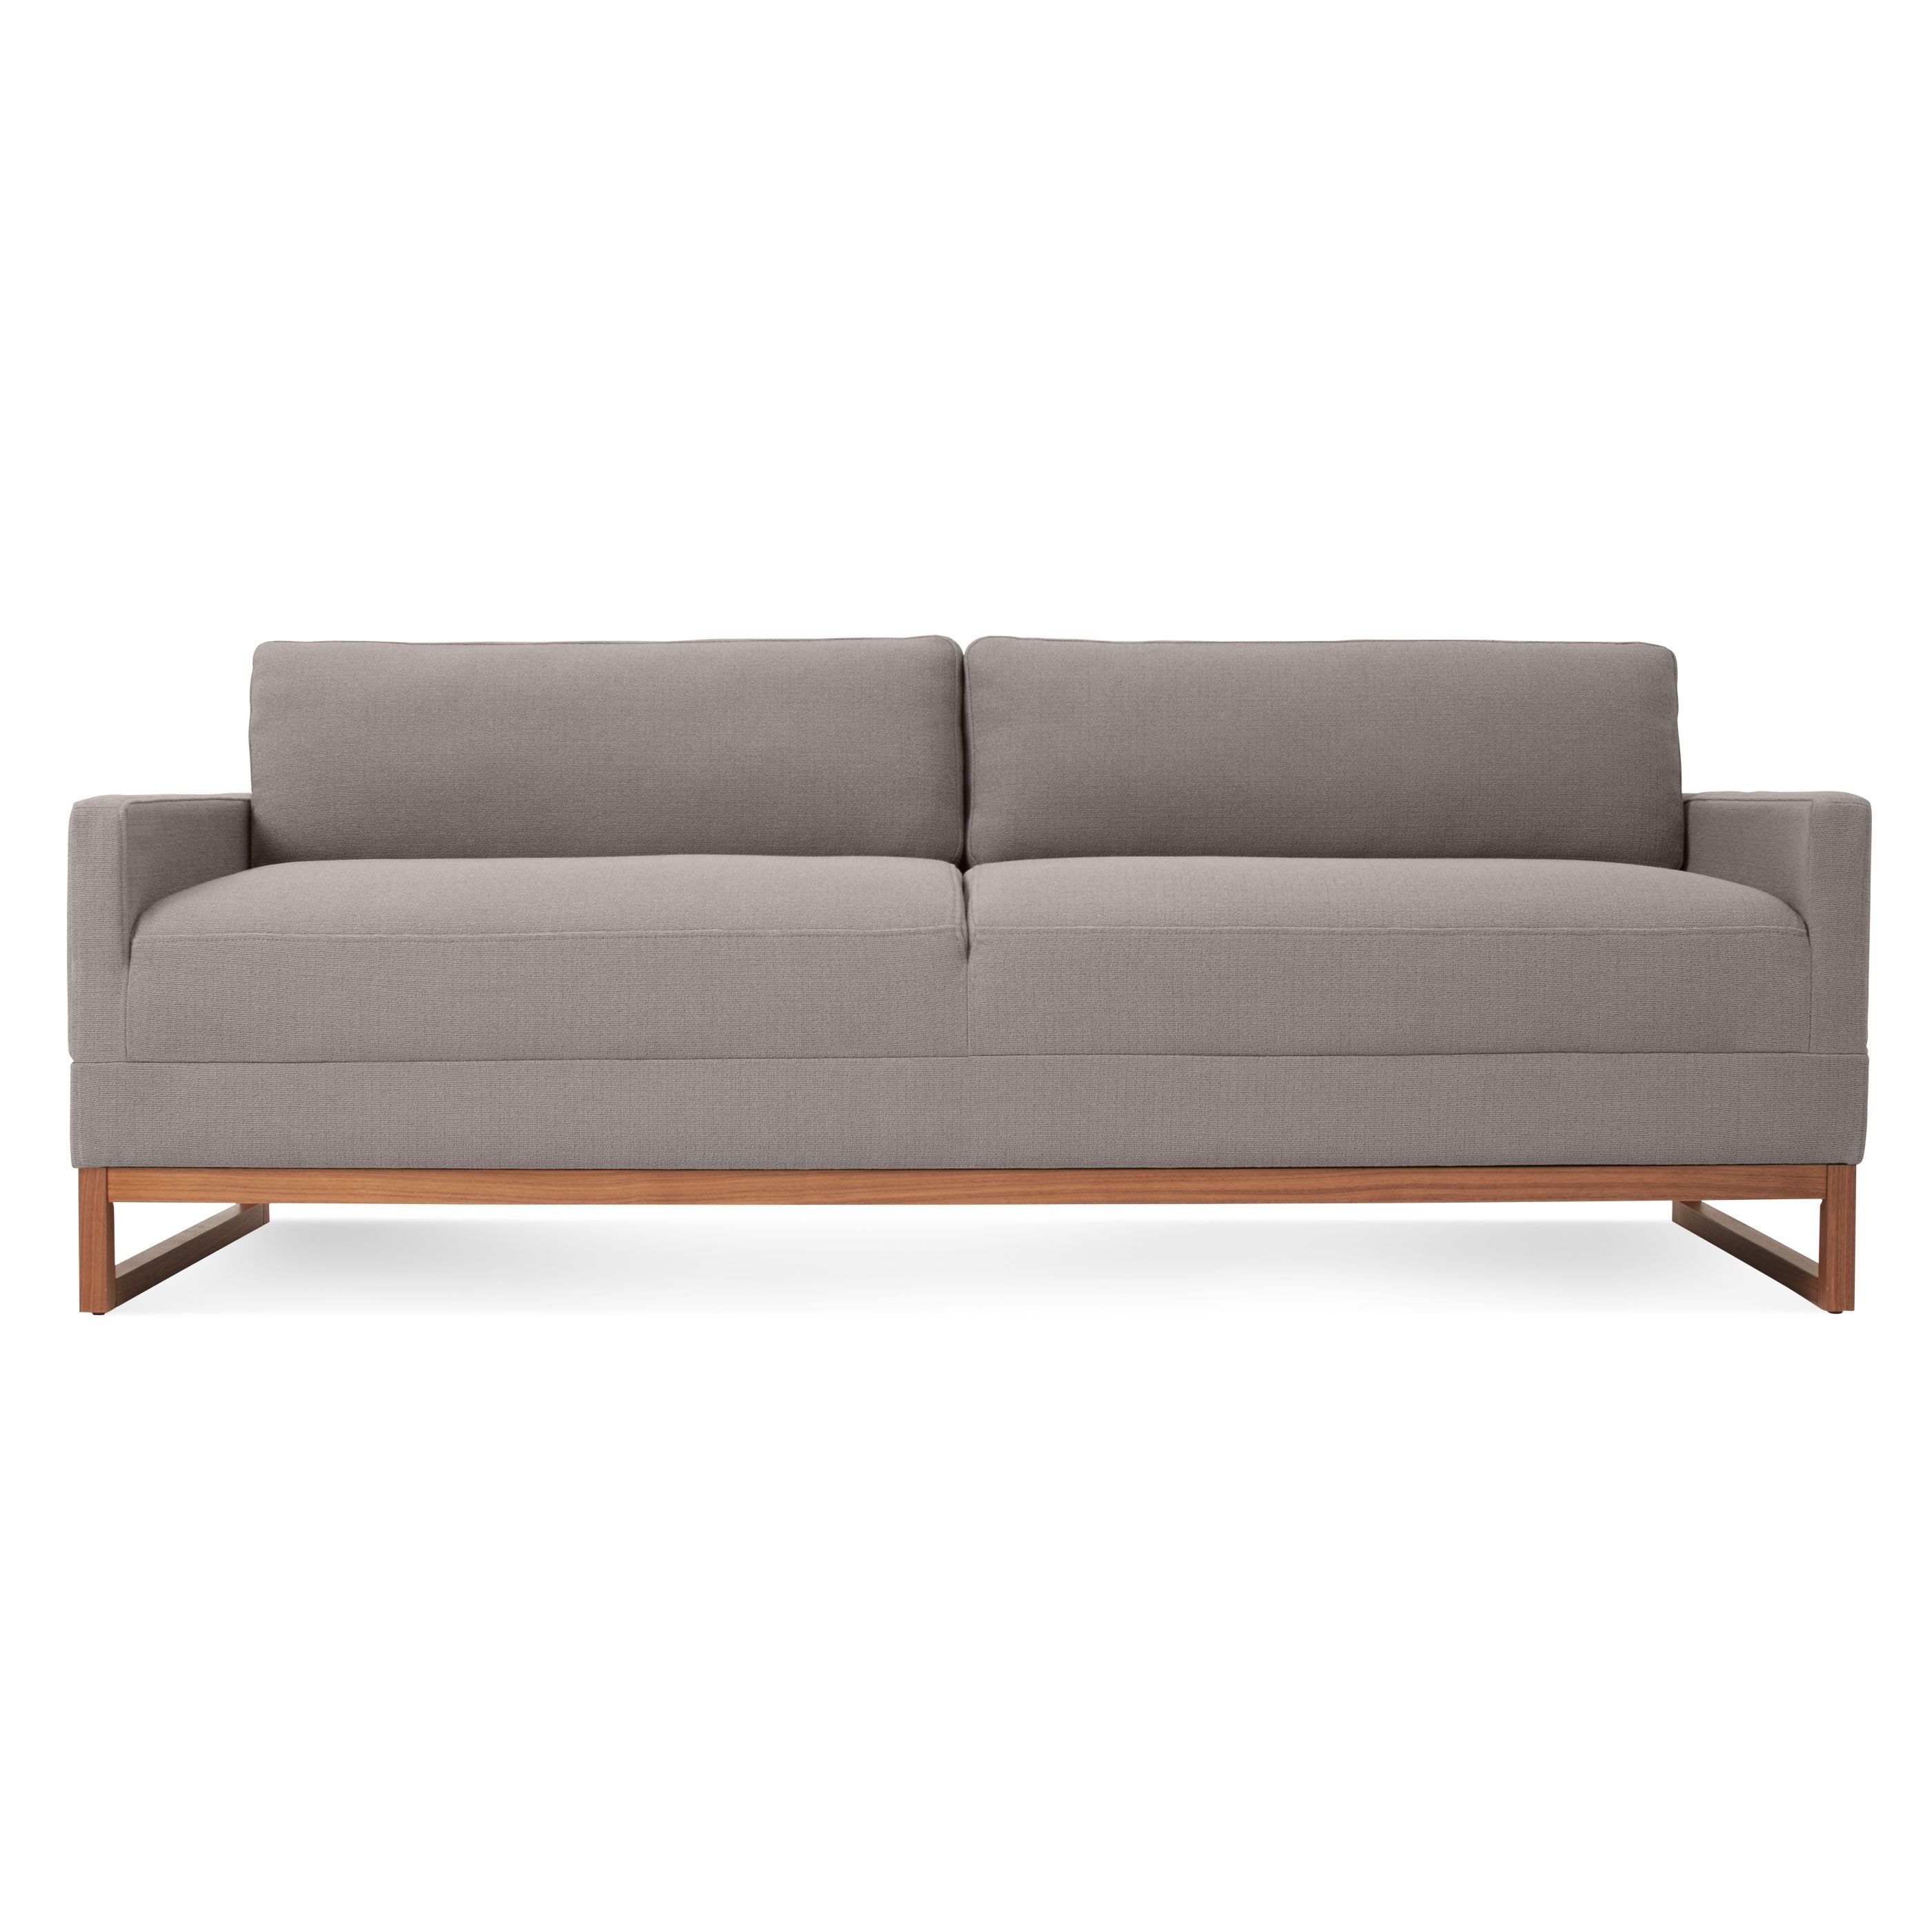 Favorite Sleeper Sofa – Diplomat Convertible Sofa (View 7 of 20)